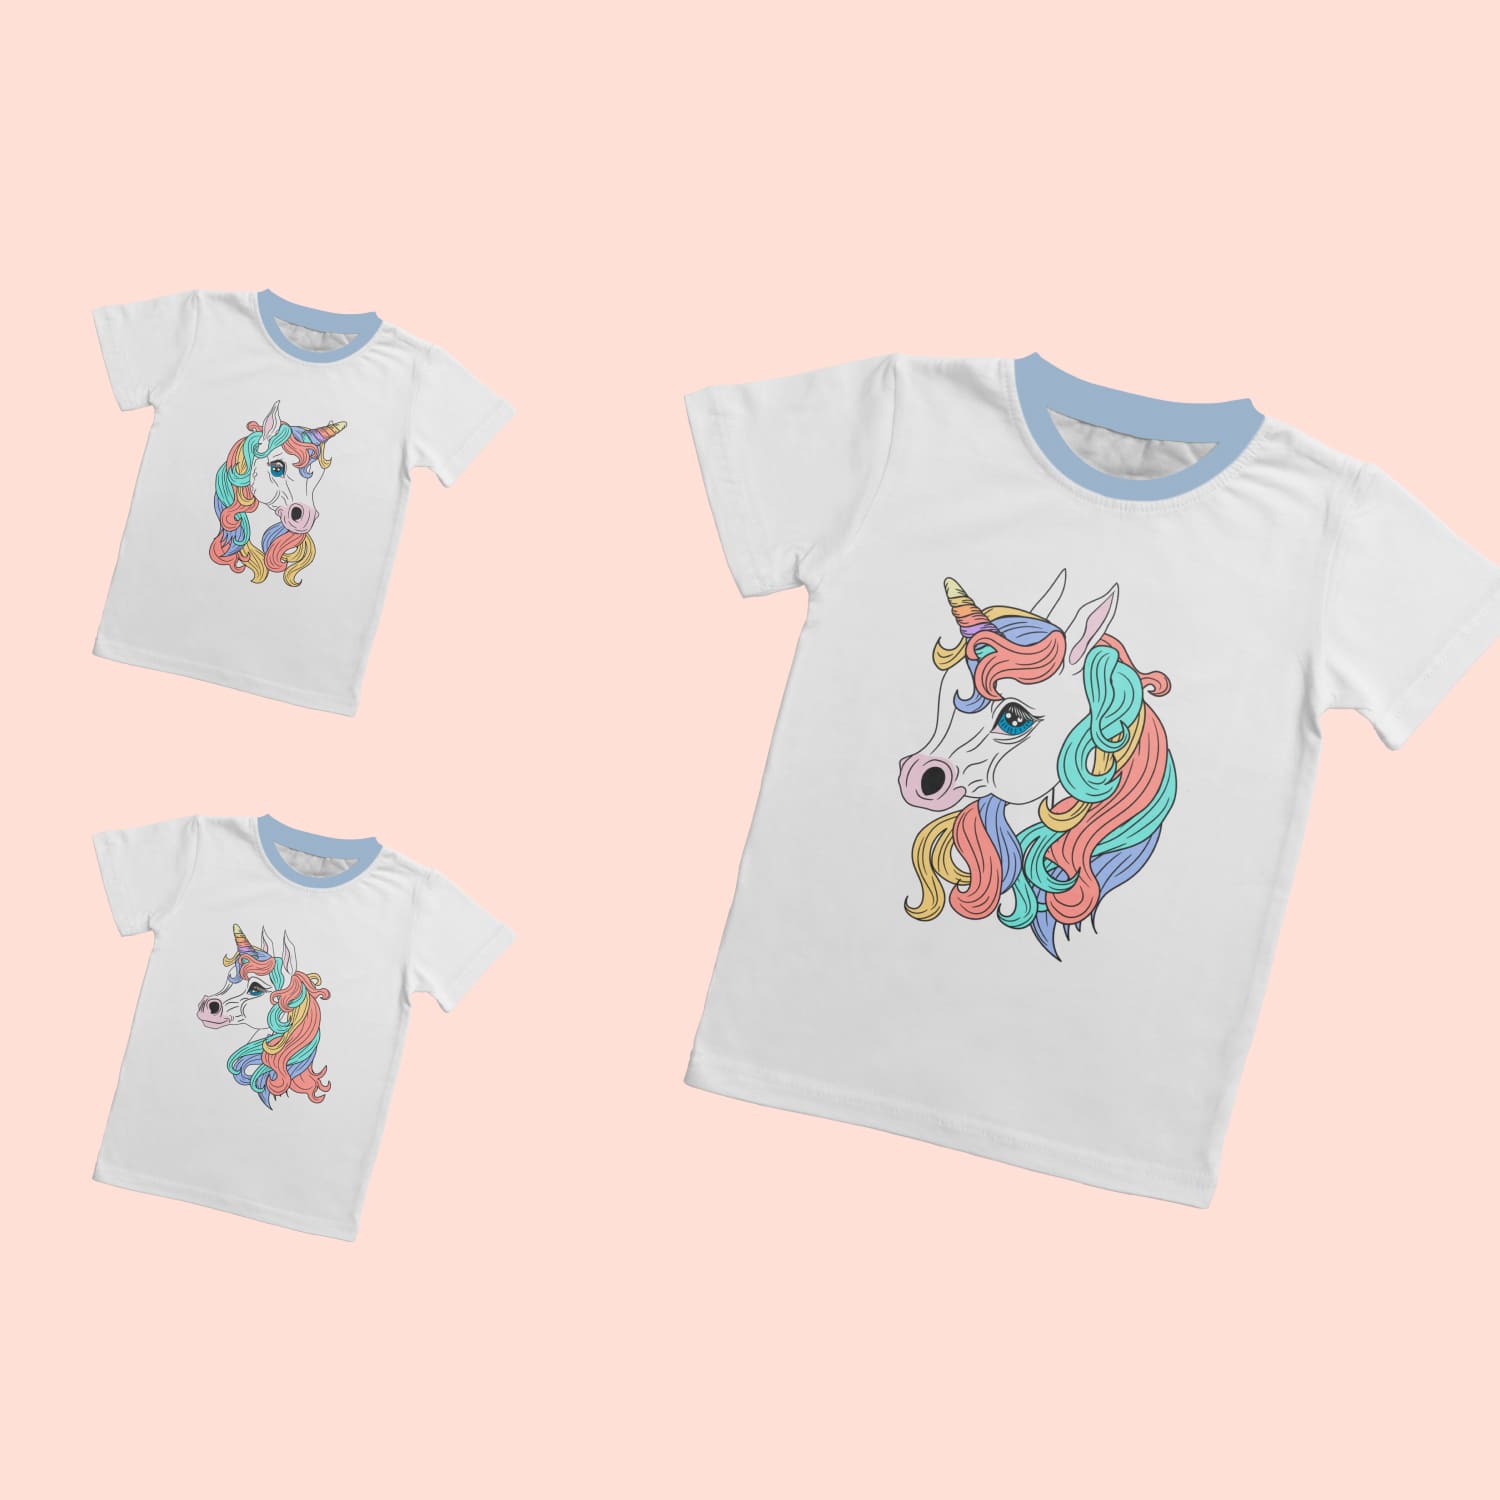 Unicorn Face T-shirt Designs Bundle Cover.